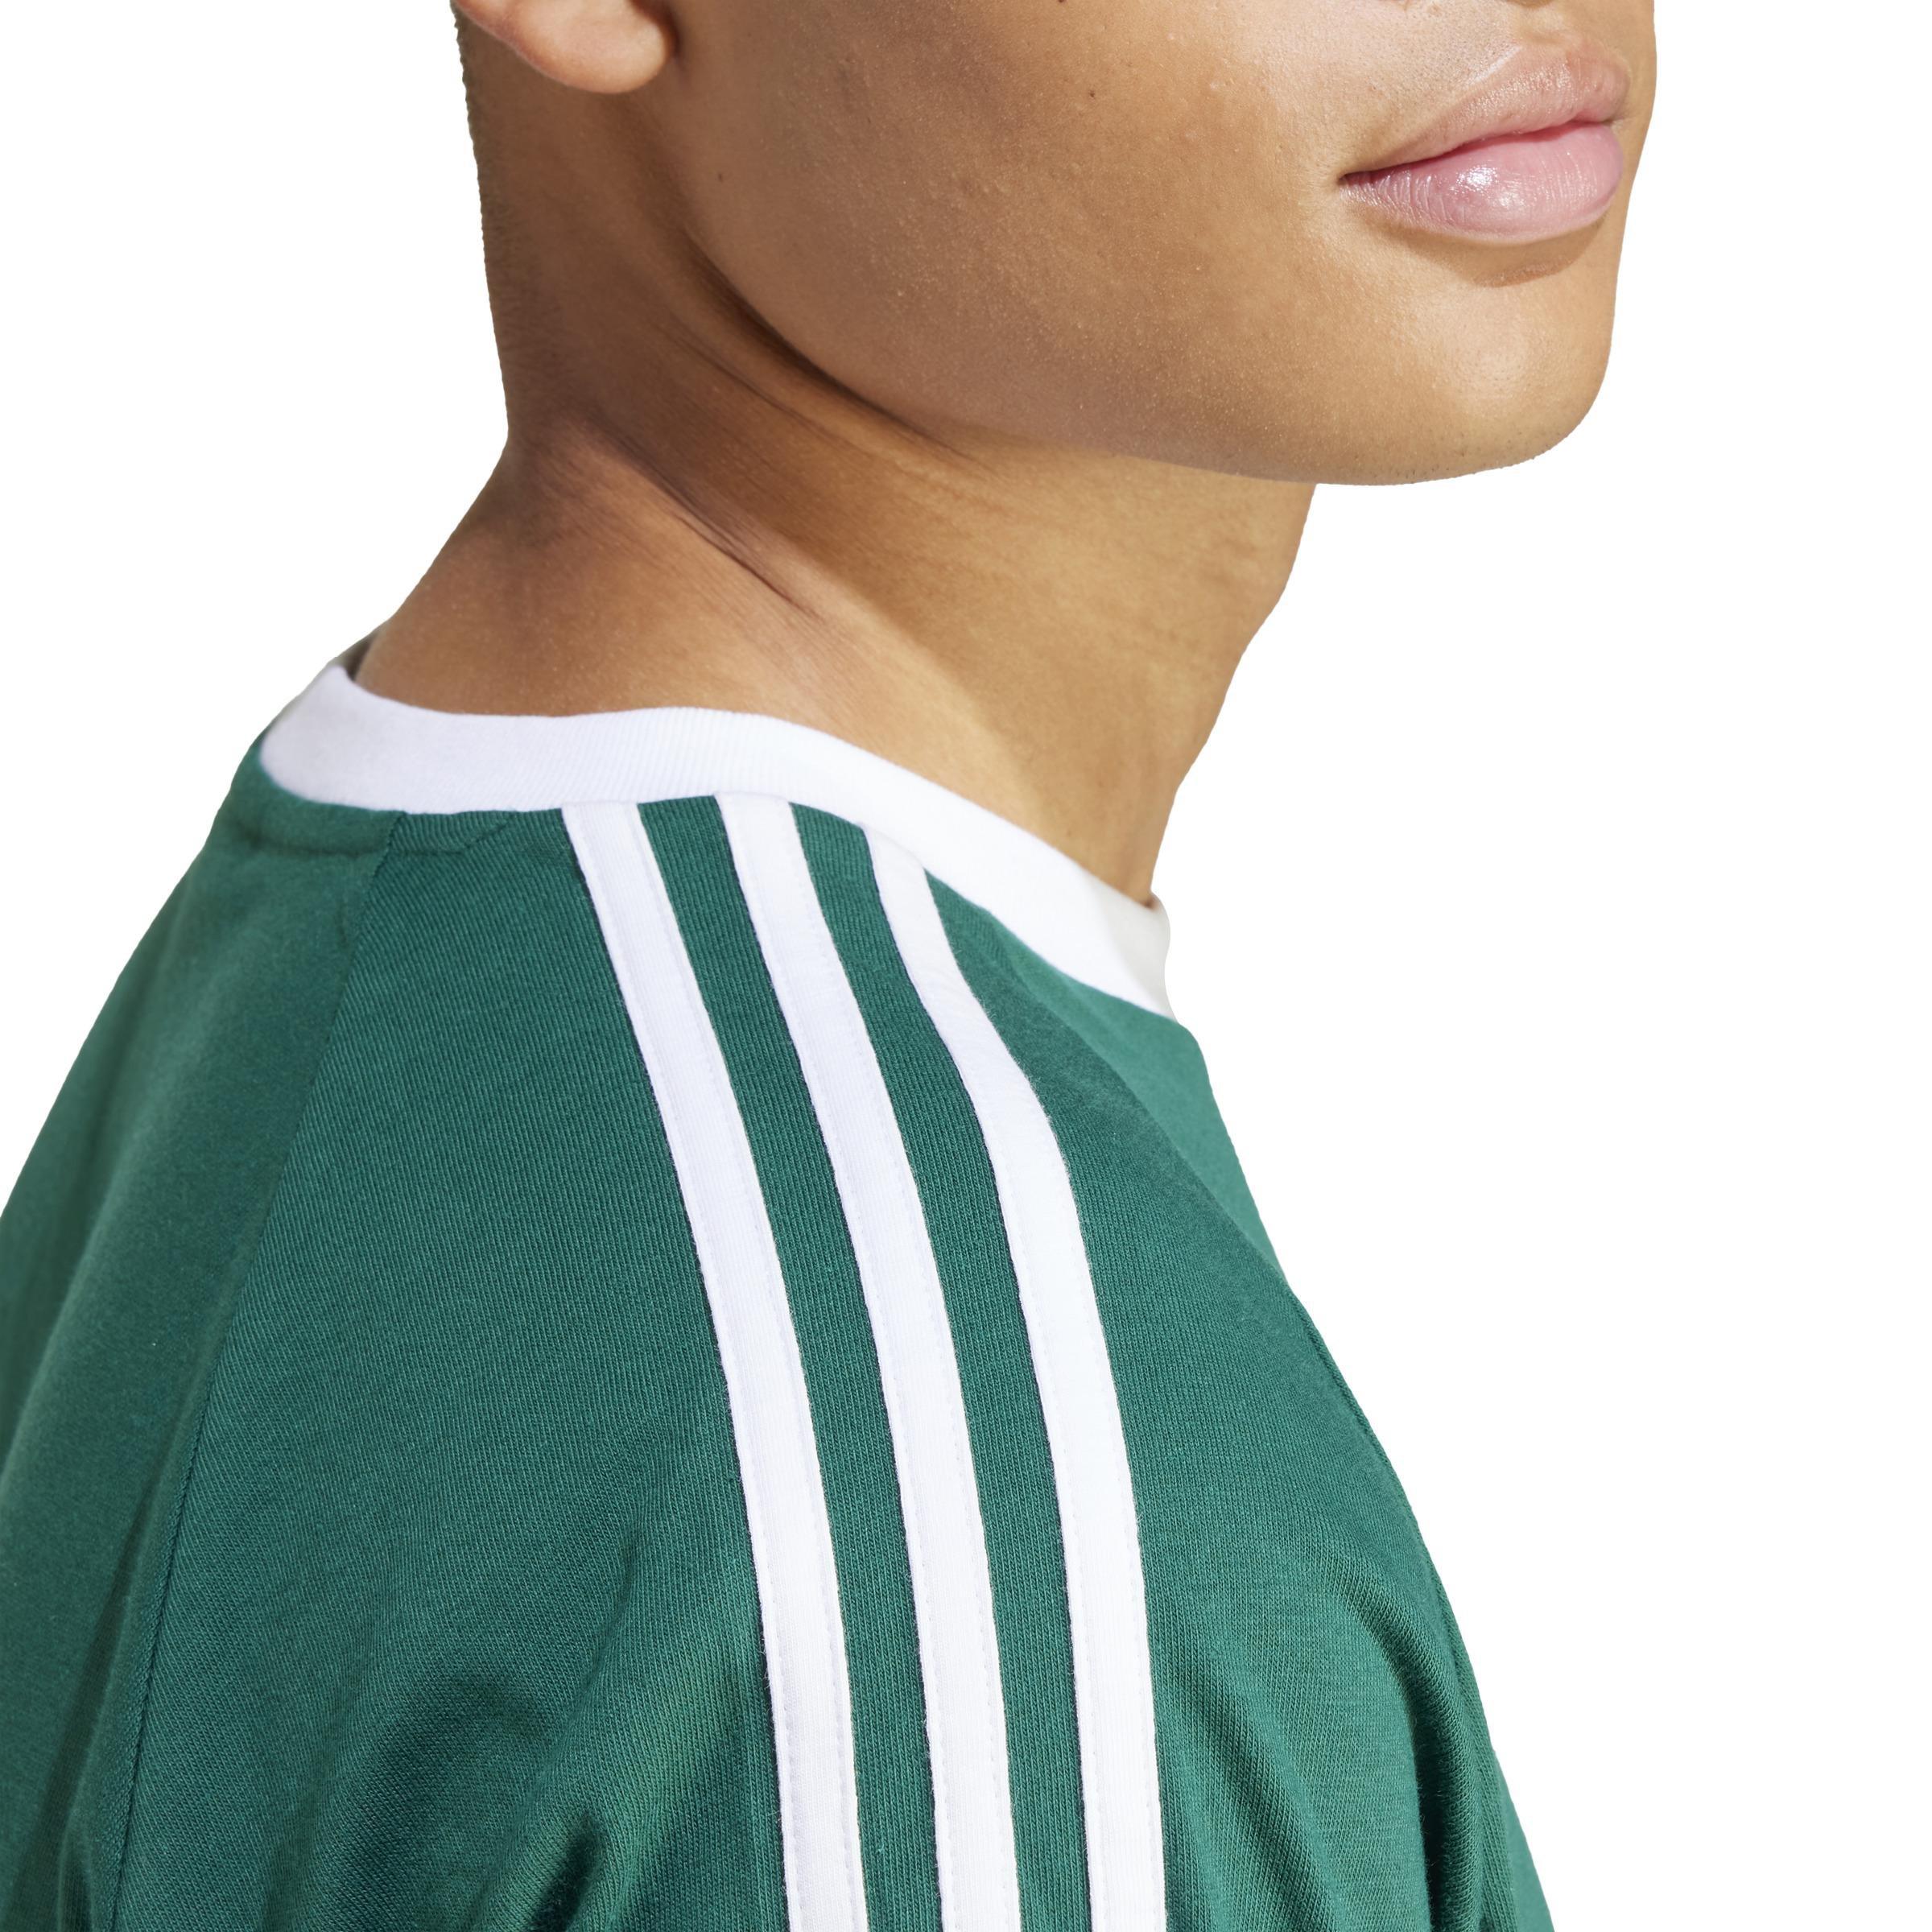 adidas - Men Adicolor Classics 3-Stripes T-Shirt, Green